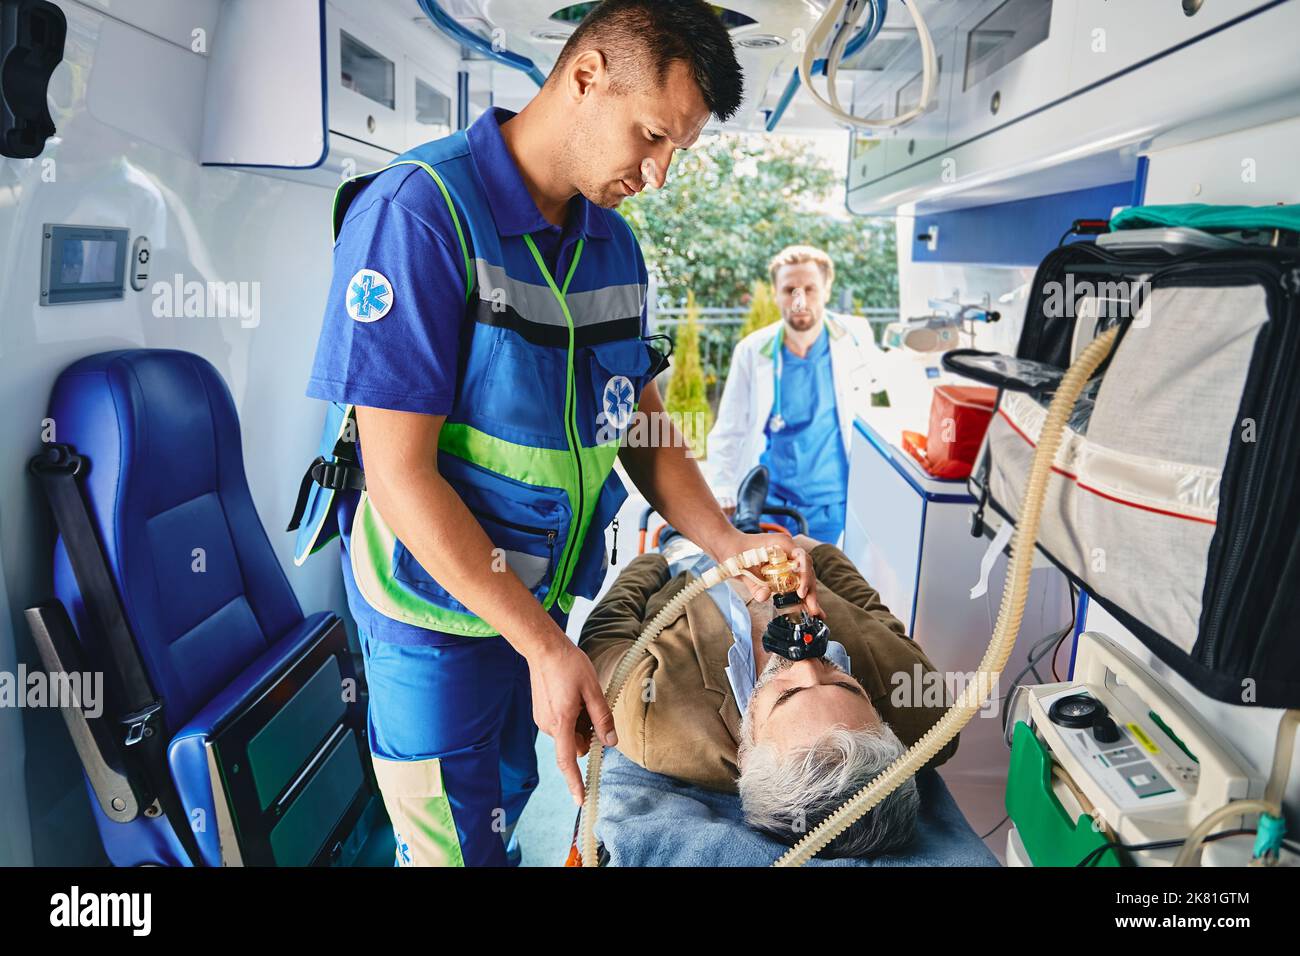 Erste Hilfe, Behandlung im Krankenwagen. Krankenwagen Pflegeassistent, der medizinische Hilfe mit künstlichen Lungen Beatmungsmaske für den Patienten im Krankenwagen bietet Stockfoto